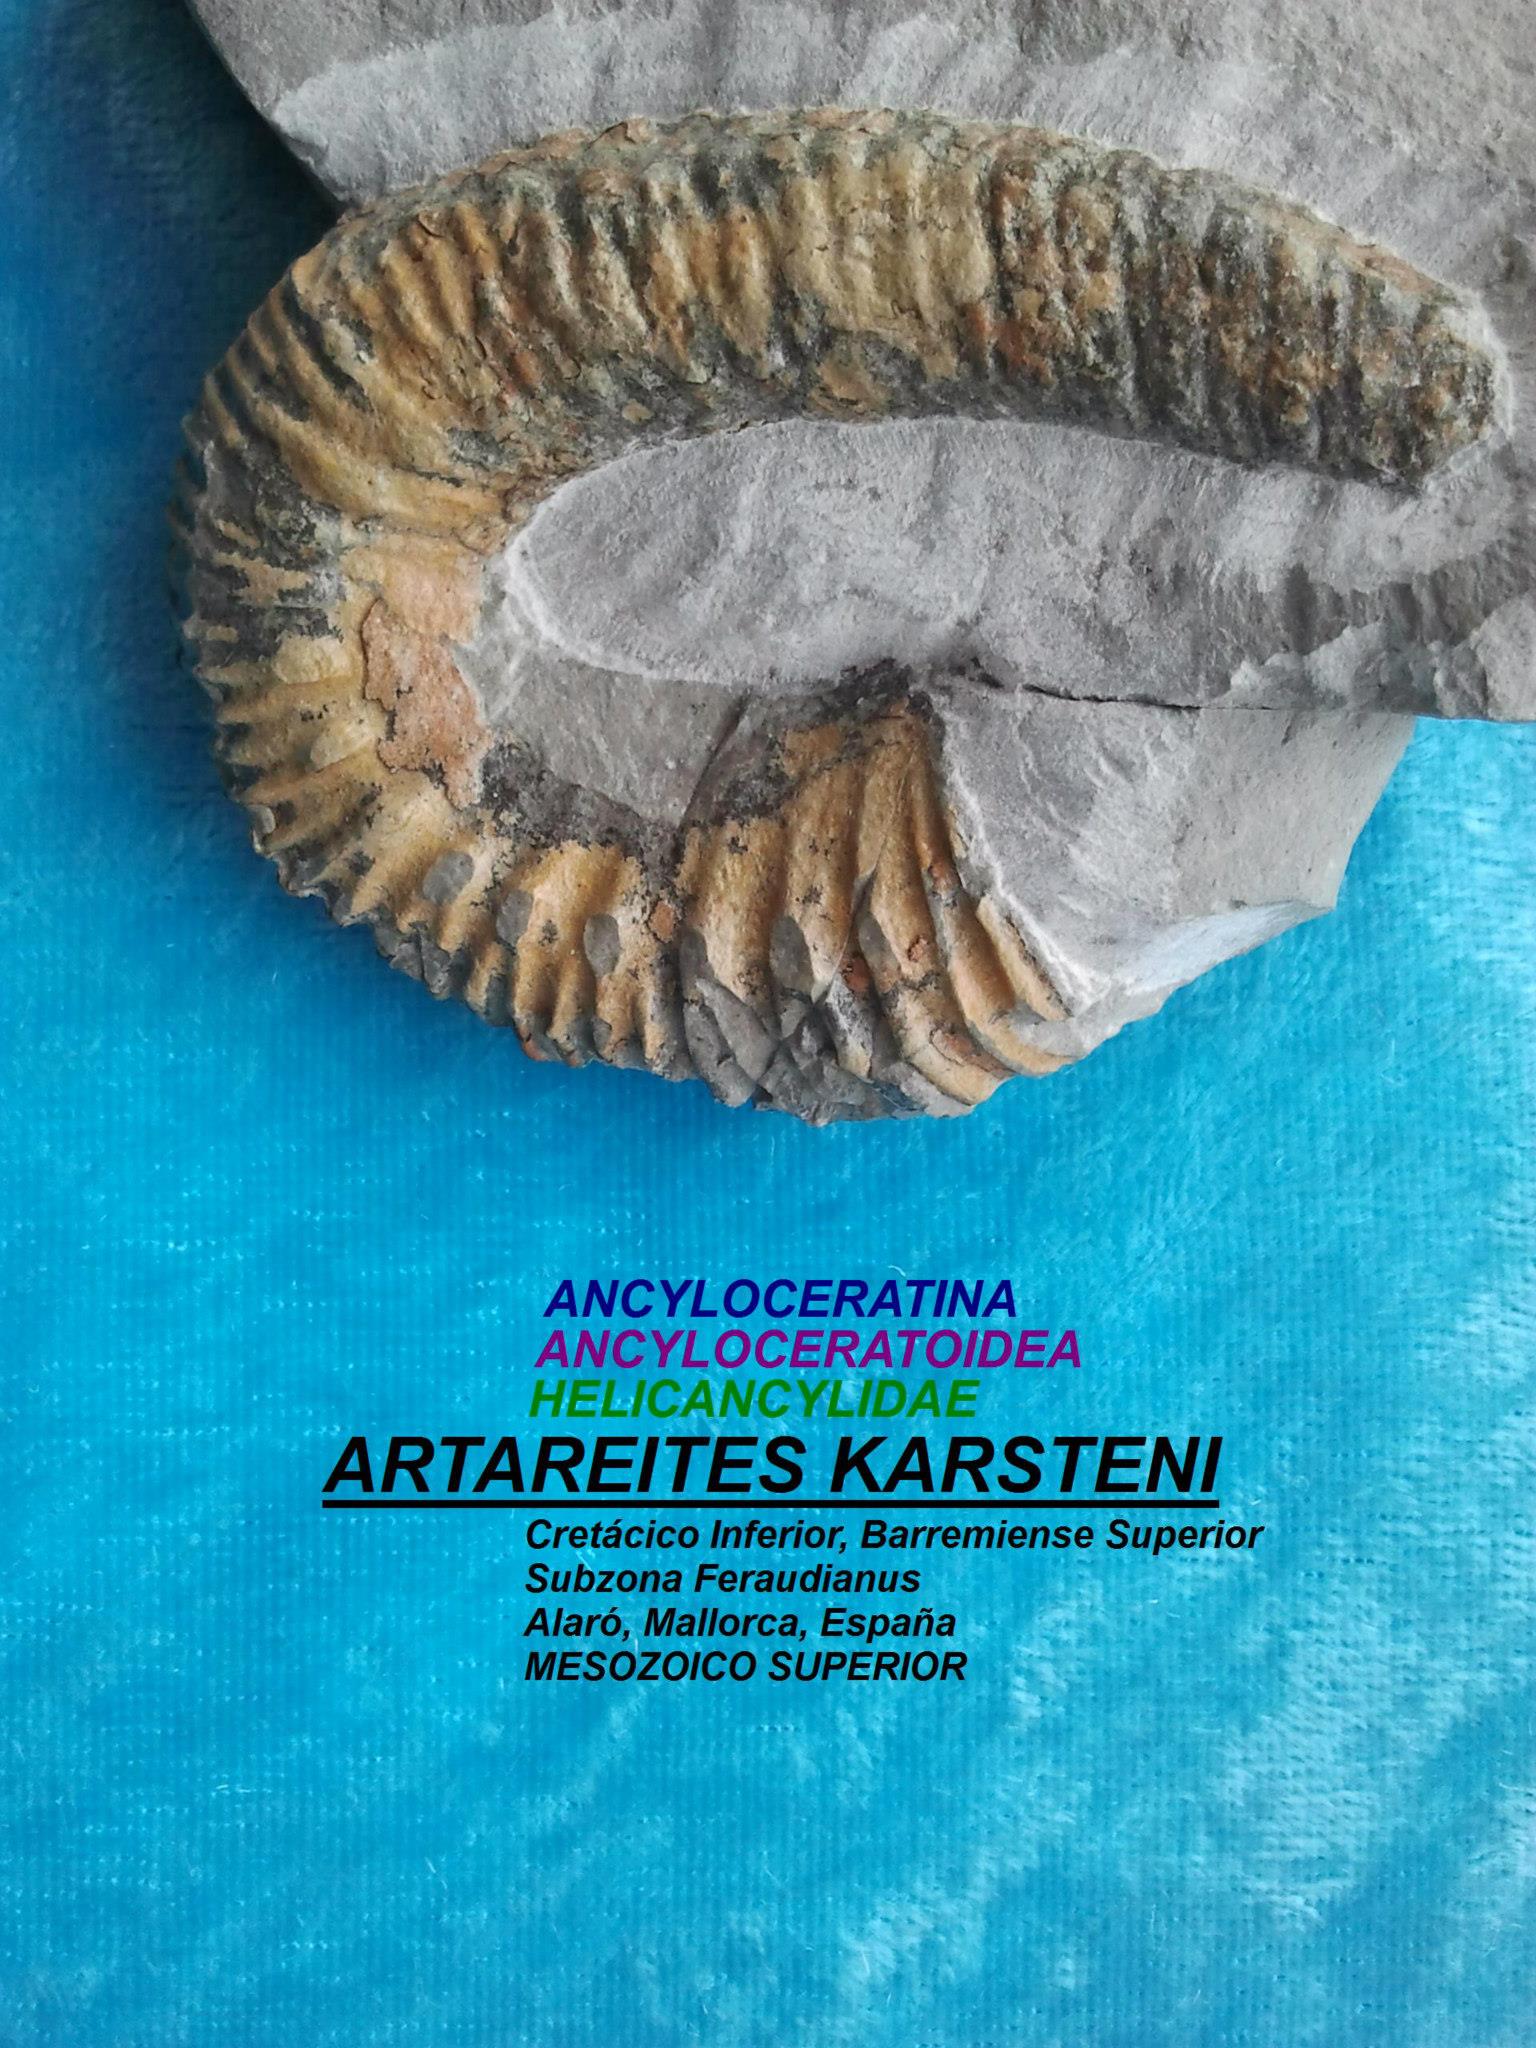 ARTAREITES KARSTENI